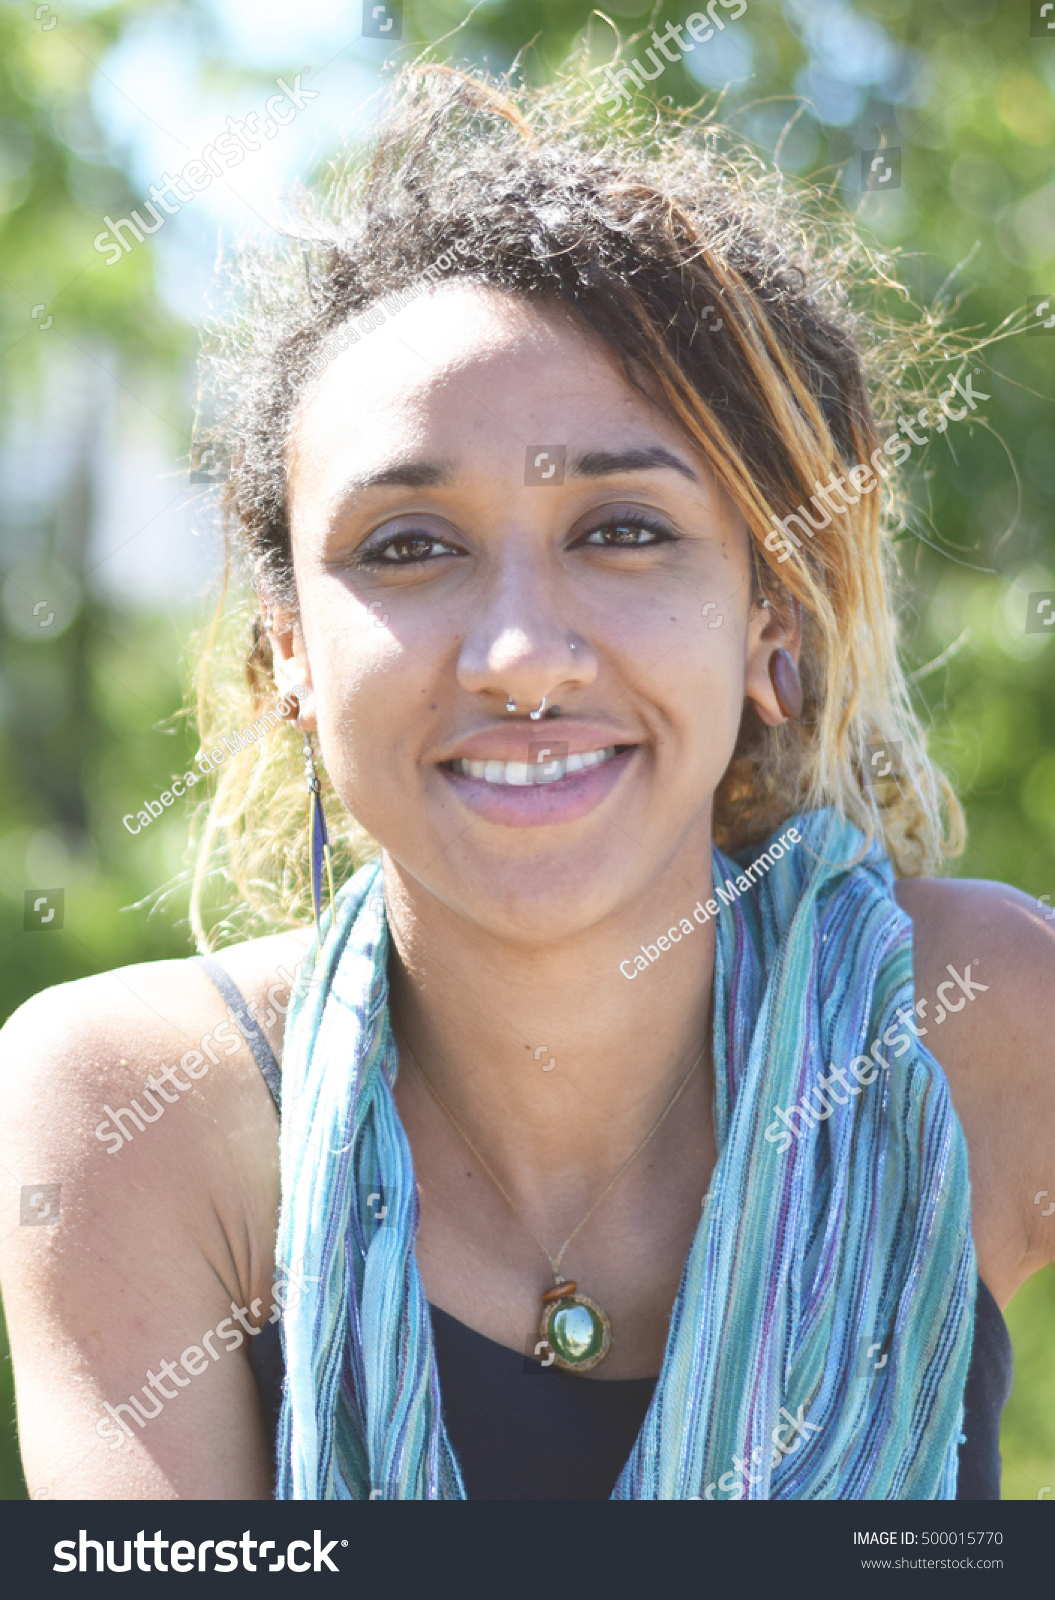 https://image.shutterstock.com/z/stock-photo-beautiful-brazilian-mixed-race-woman-smiling-outside-500015770.jpg